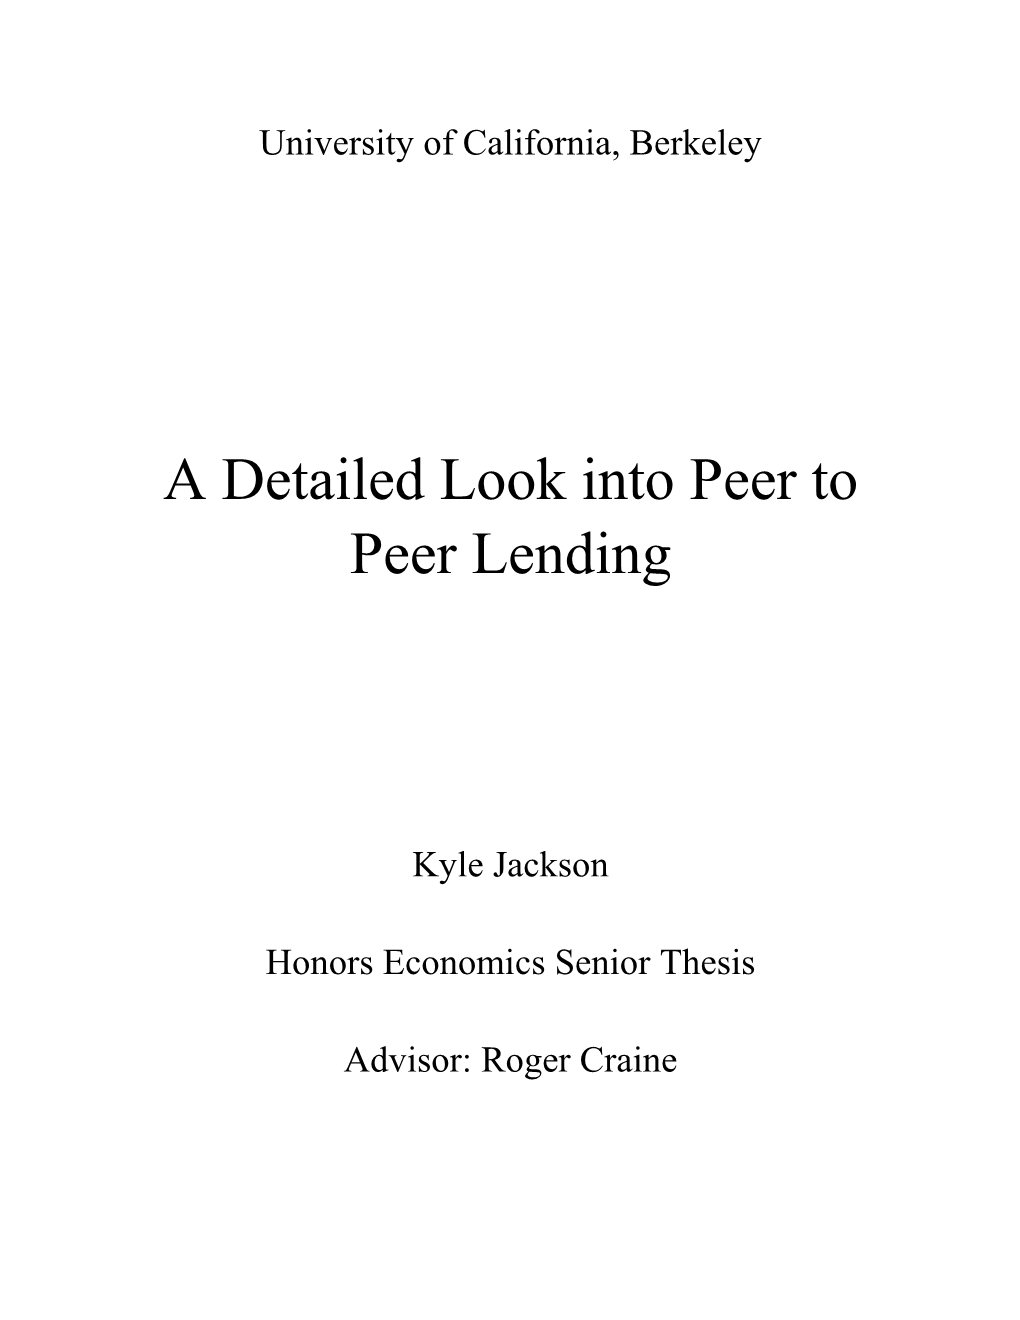 A Detailed Look Into Peer to Peer Lending